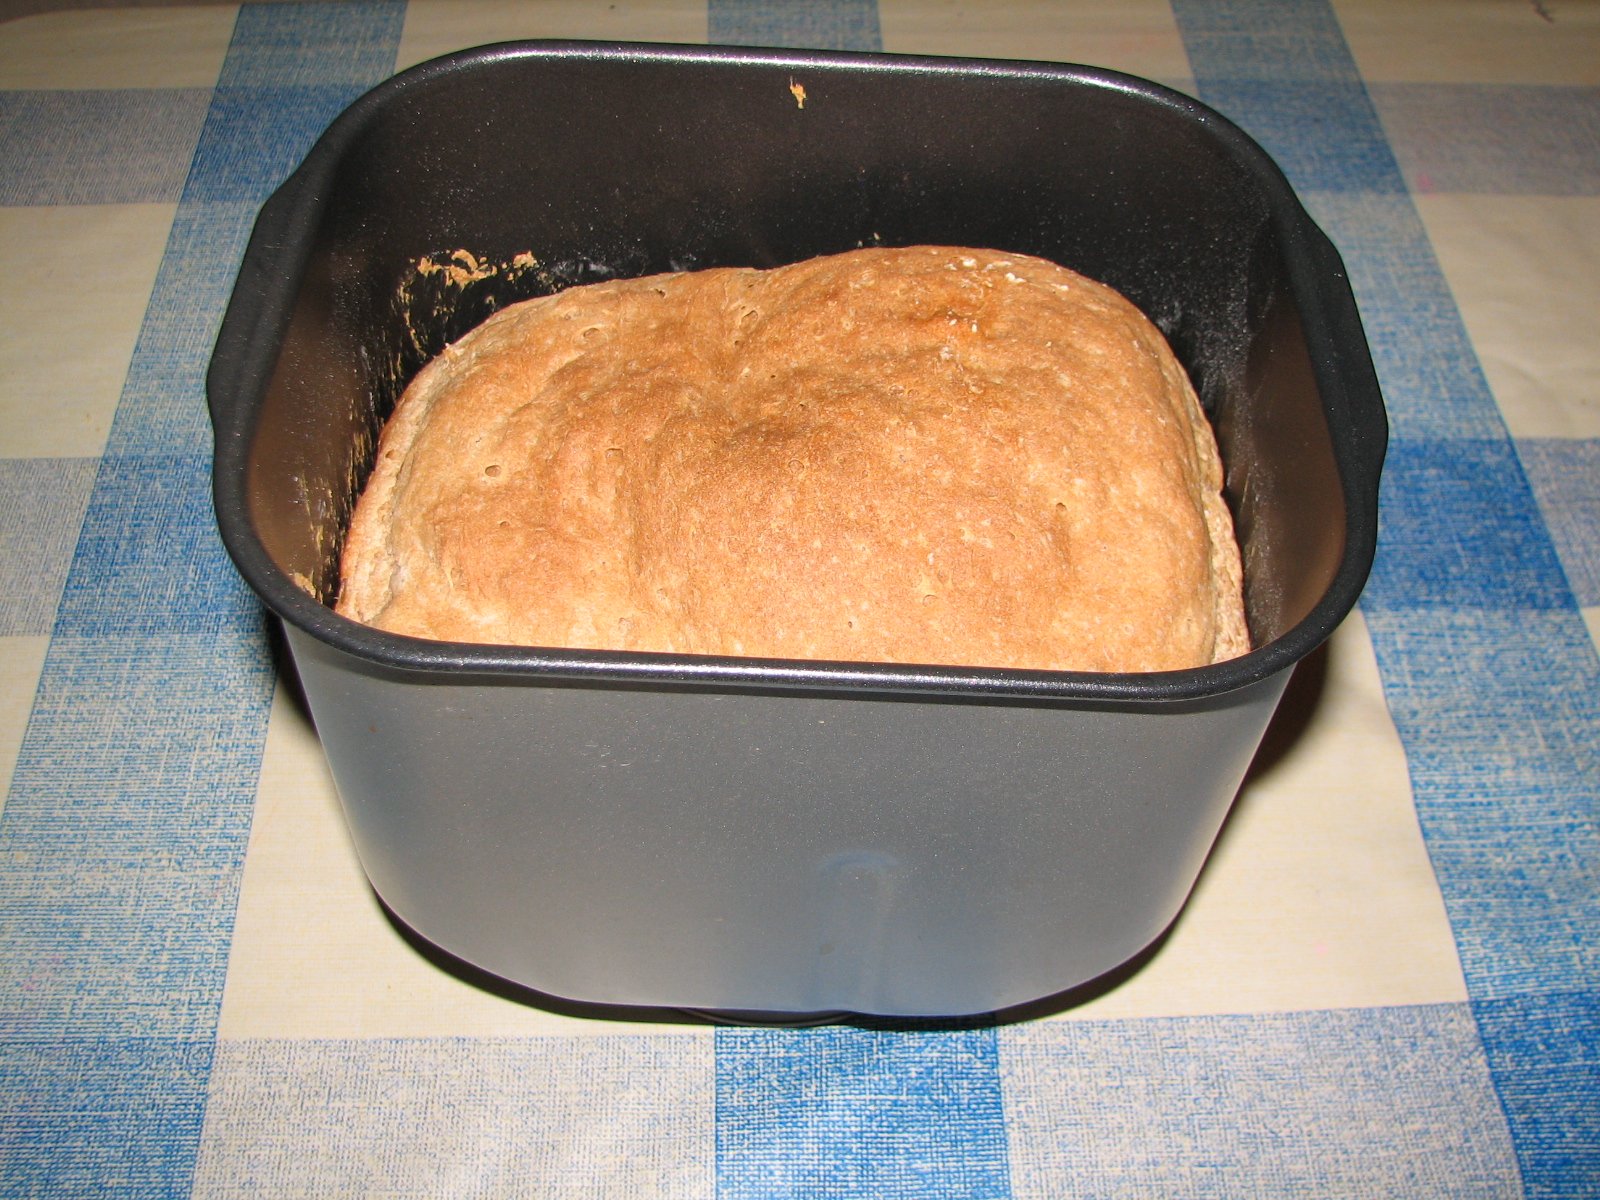 الهجينة: ميكروويف + صانعة خبز